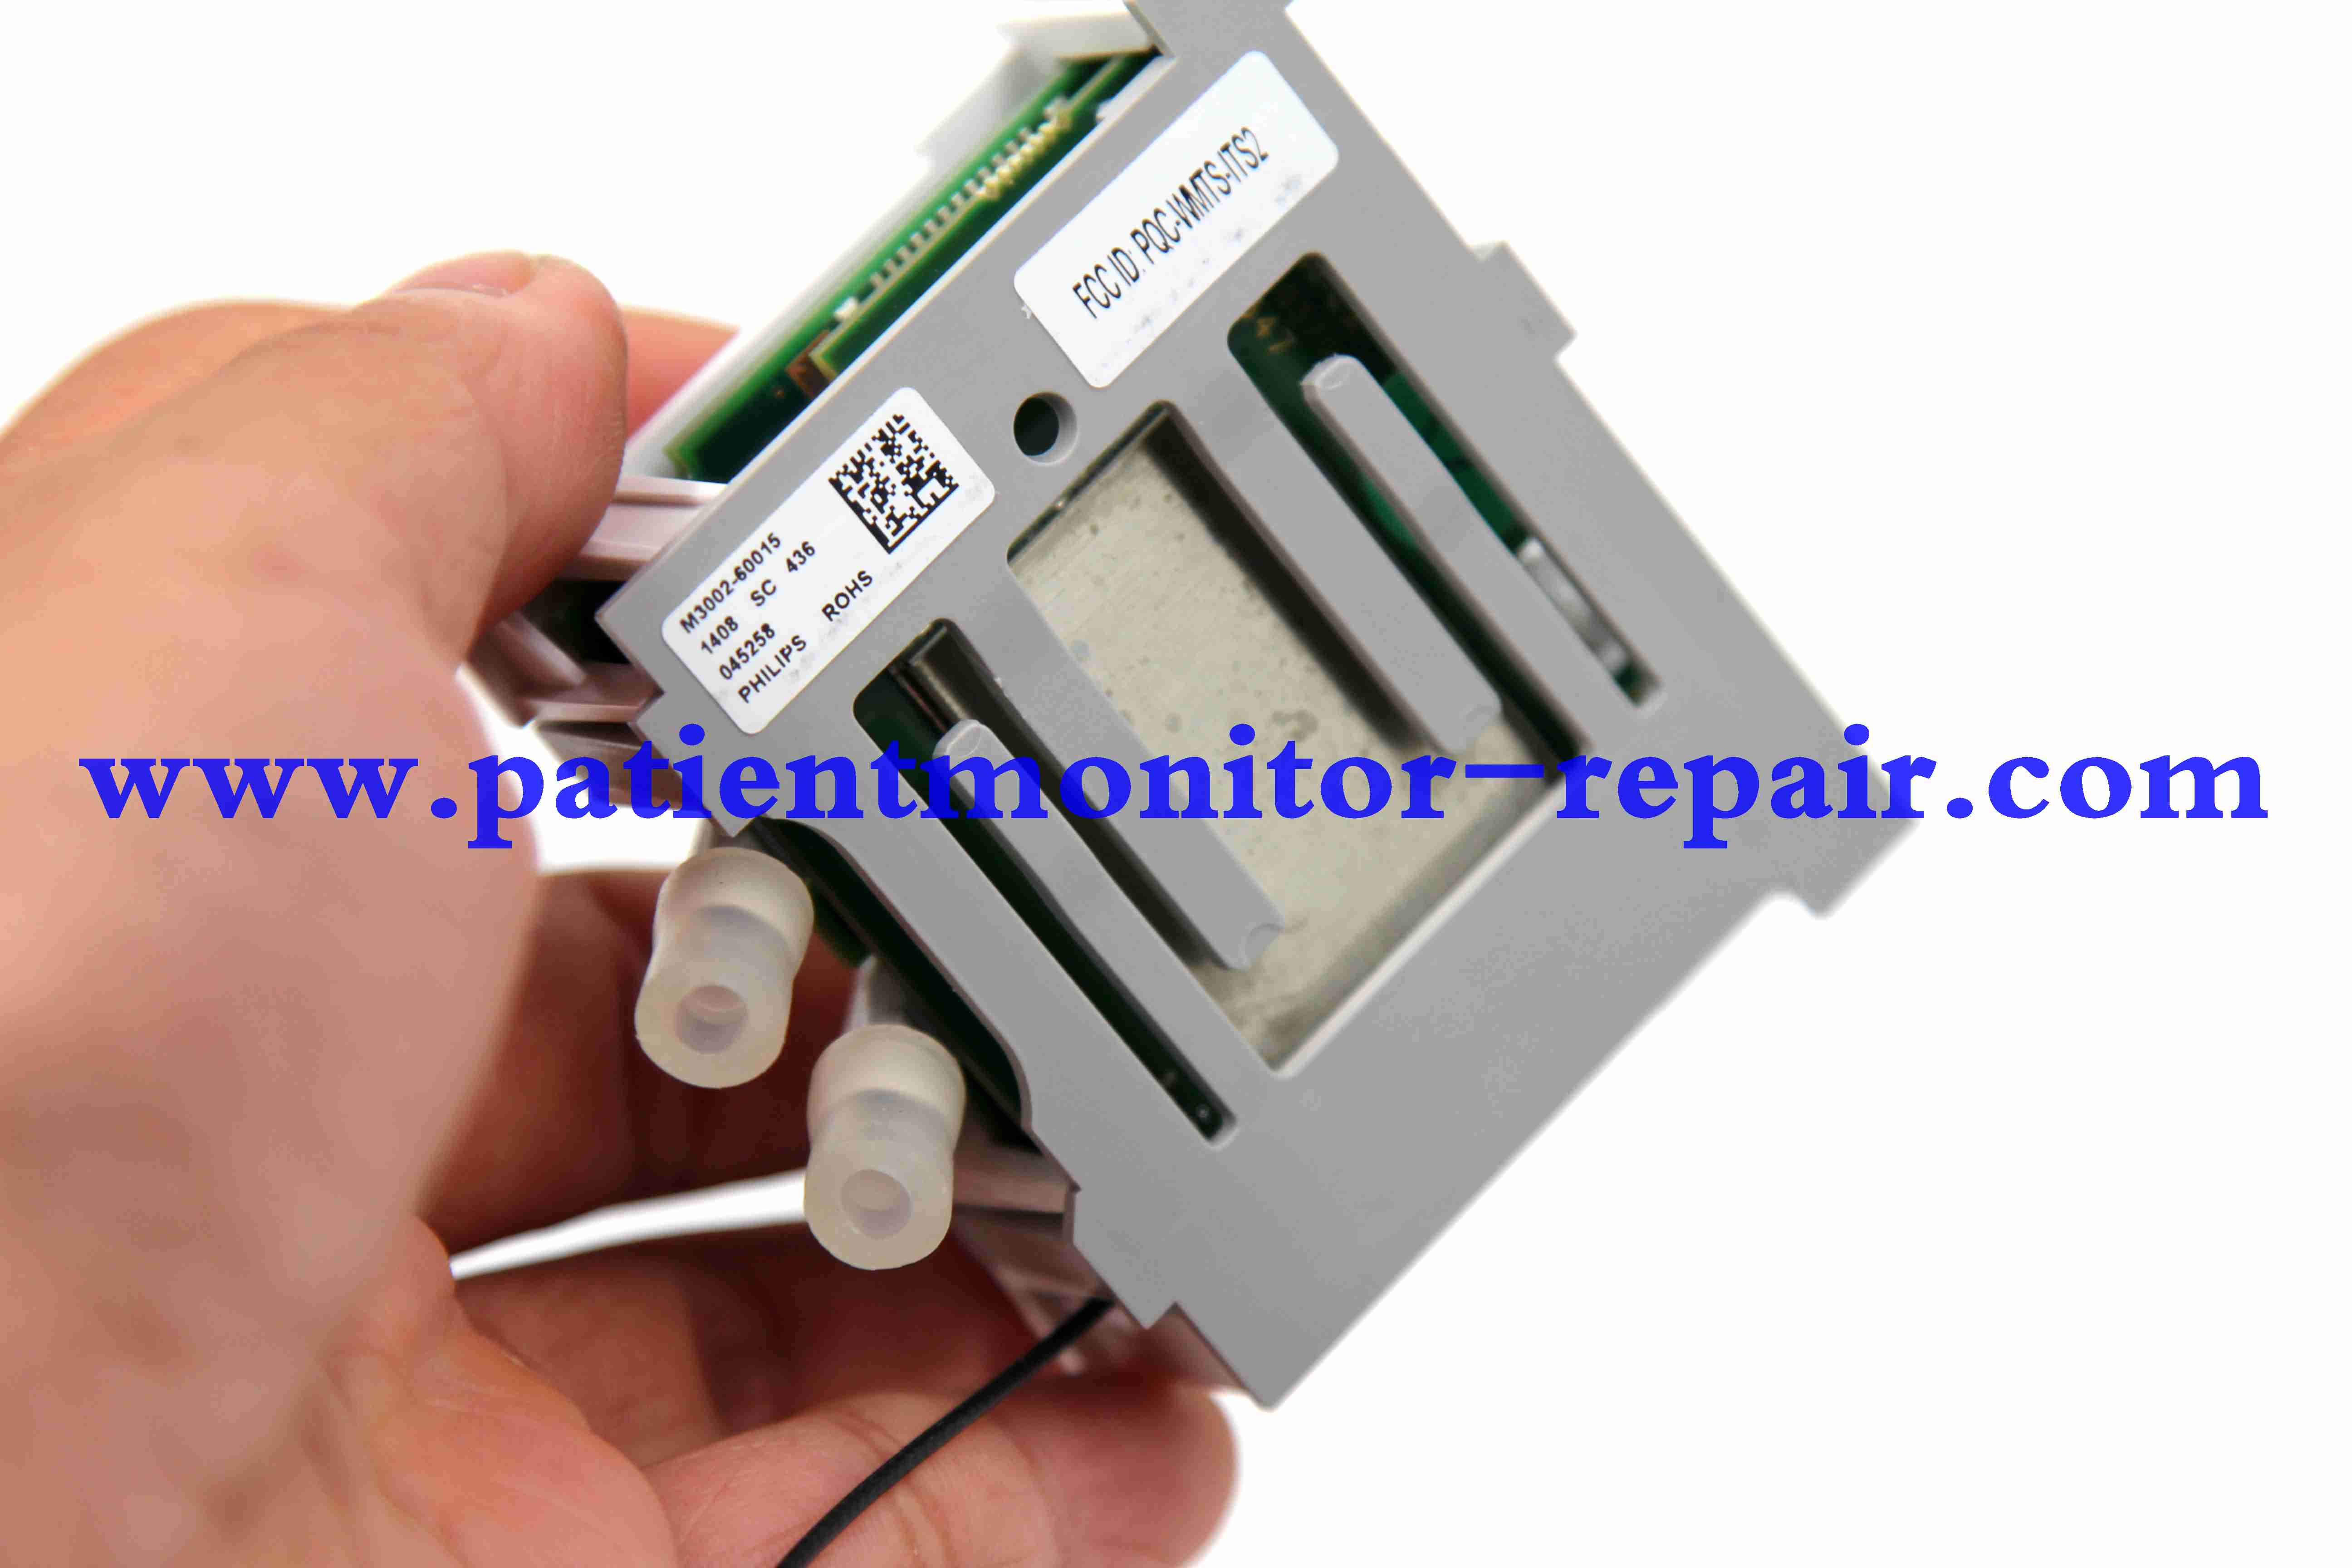  IntelliVue X2 patient monitor repair part M3002-60015